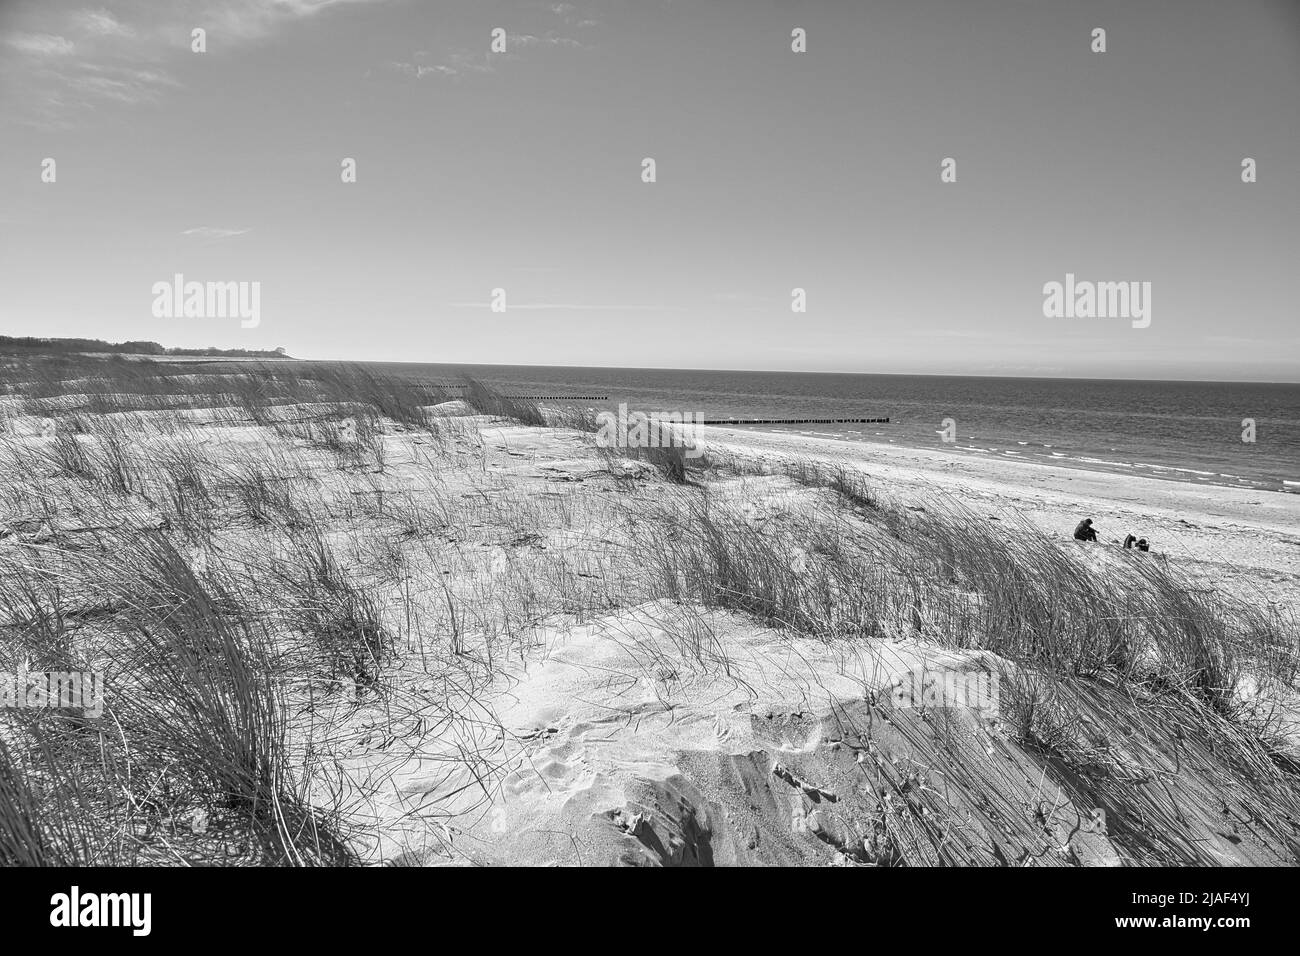 dune haute sur le darss. Point de vue dans le parc national. Plage, mer Baltique, ciel et mer. Photo de la nature en Allemagne Banque D'Images